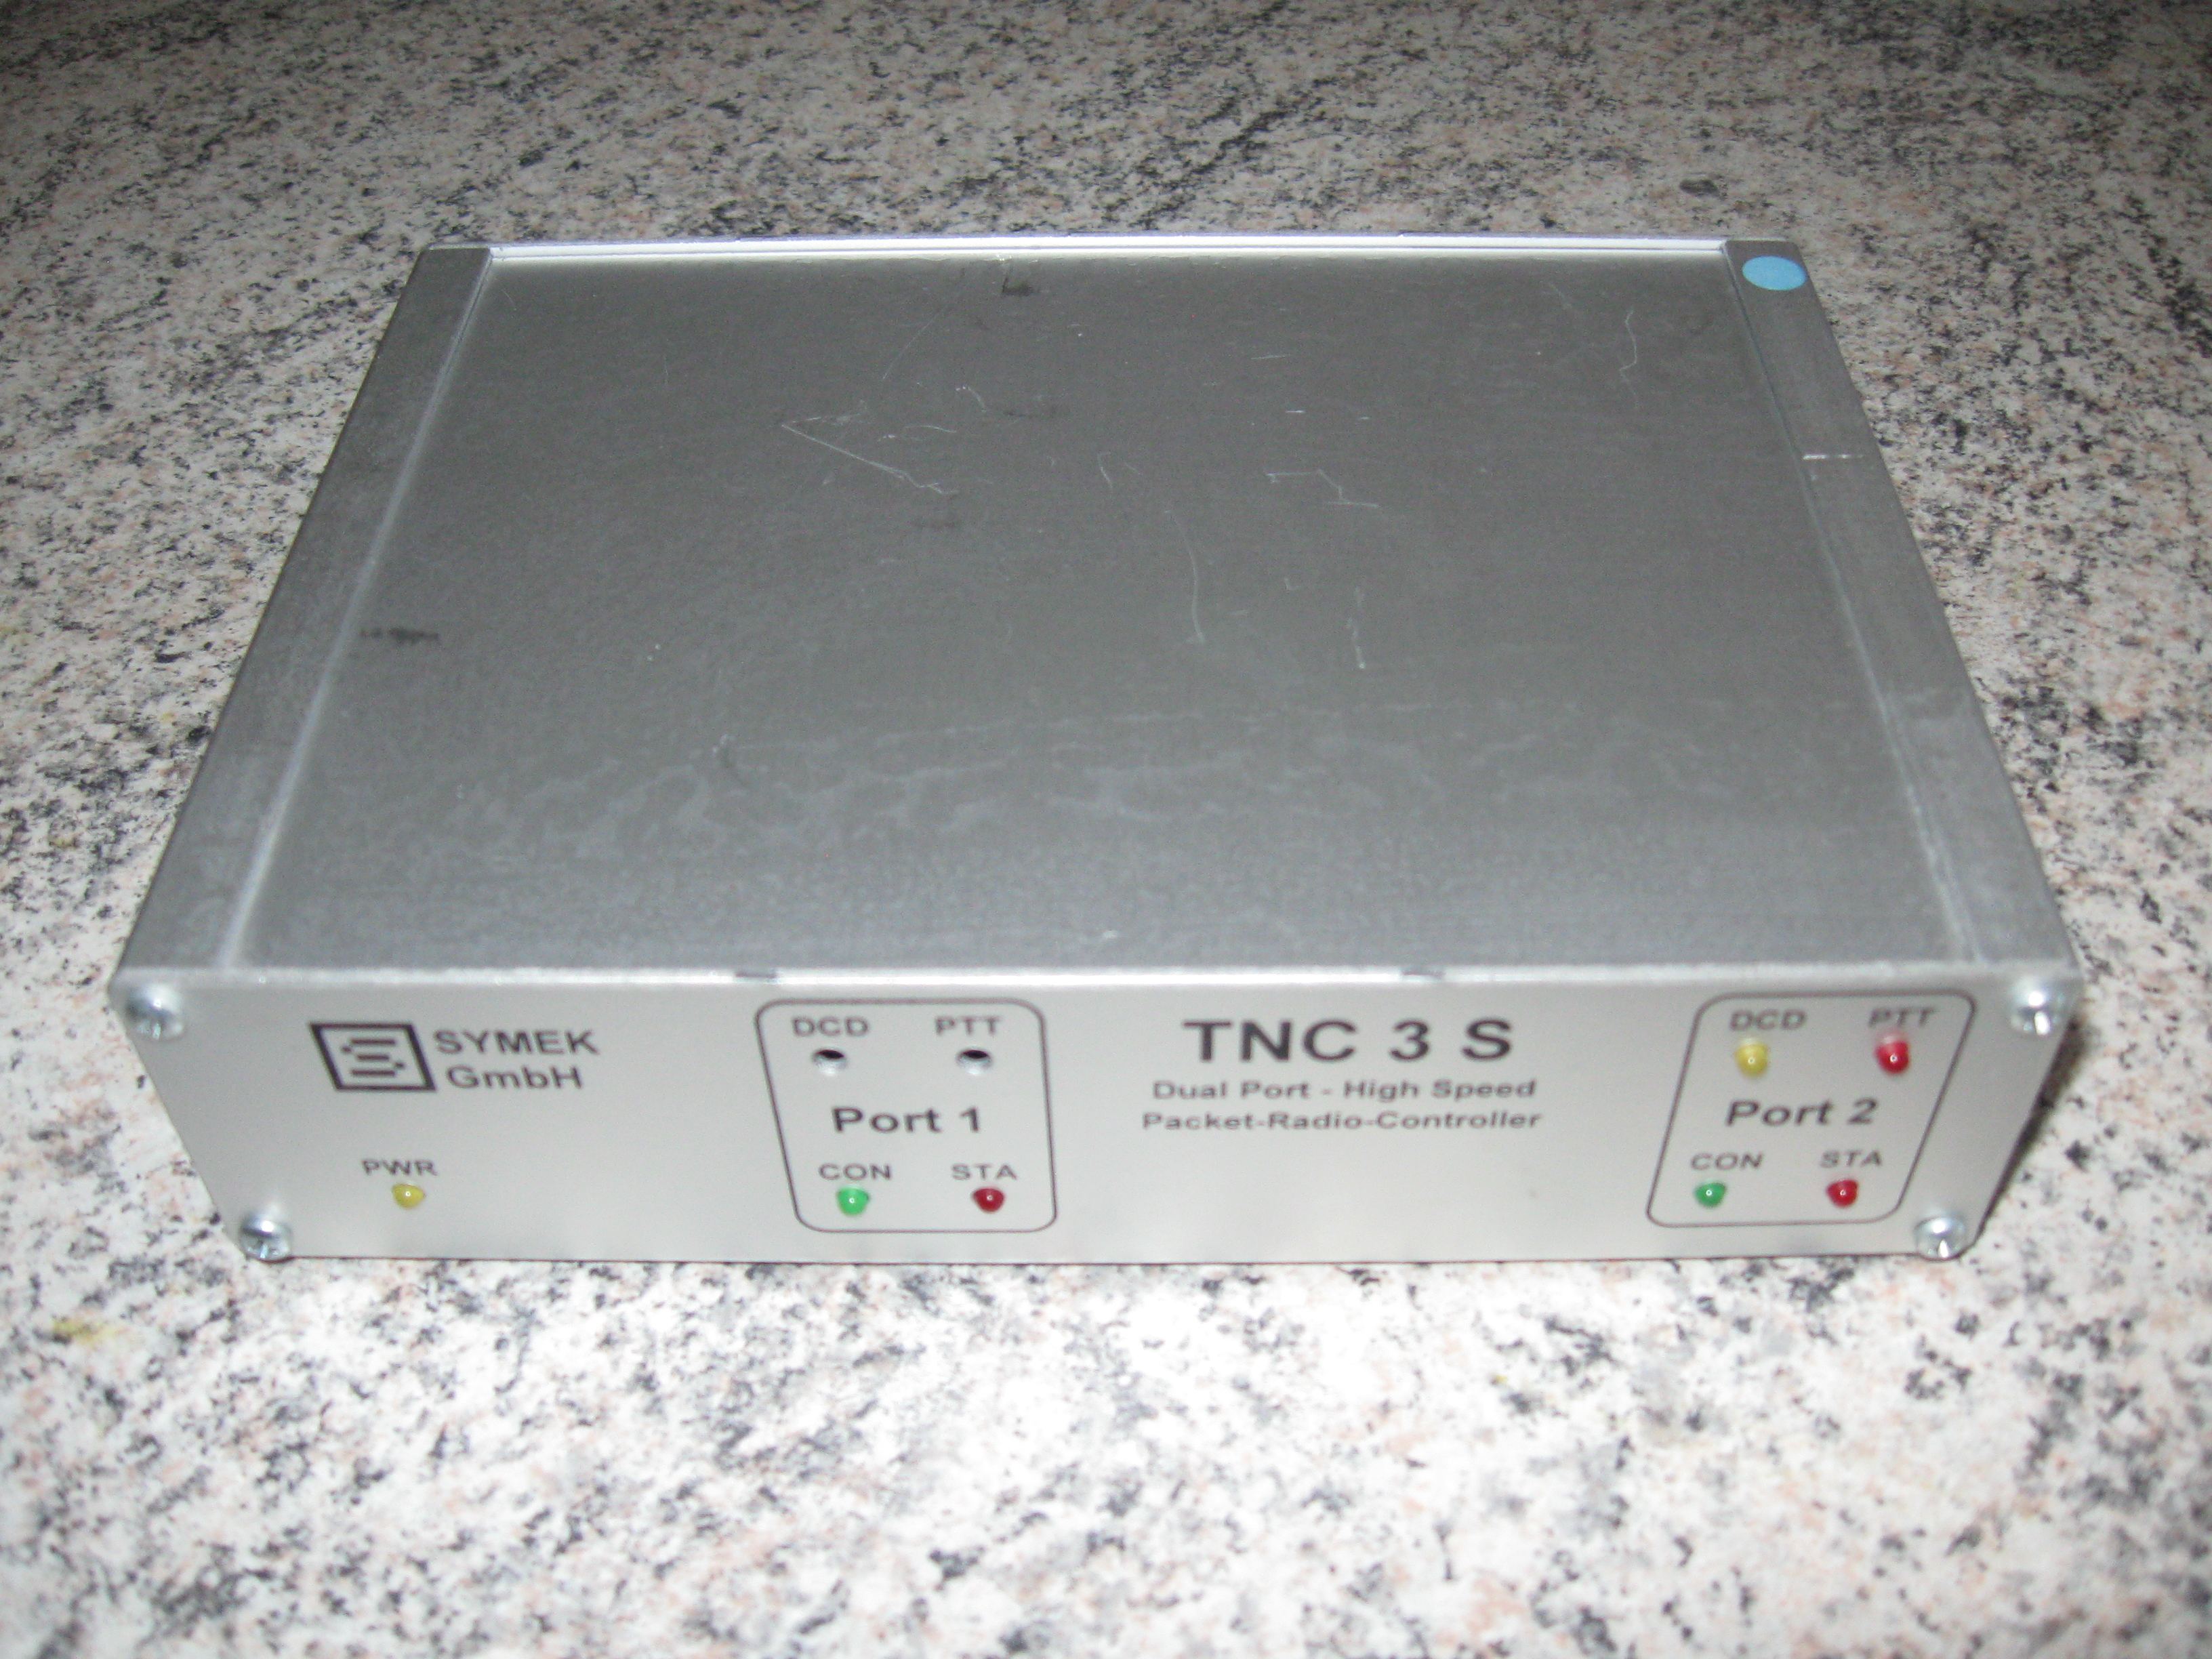 Frontansicht des TNC3S Packet-Radio-TNC von Symek mit einem eingebauten 9600 Baud Modem